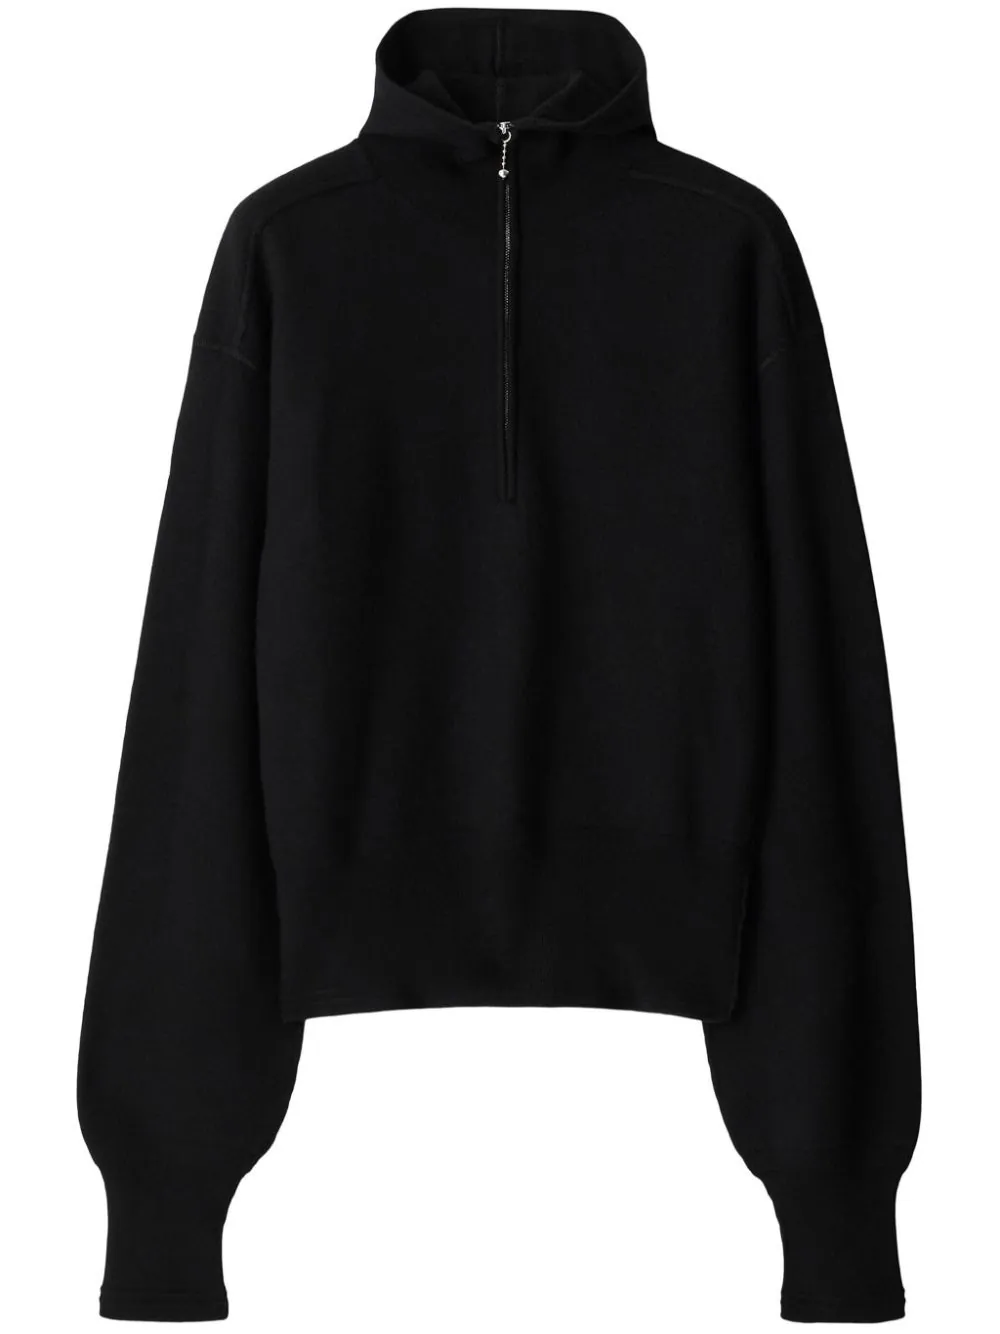 Burberry Brit Half-Zip Jersey Pullover in Black for Men